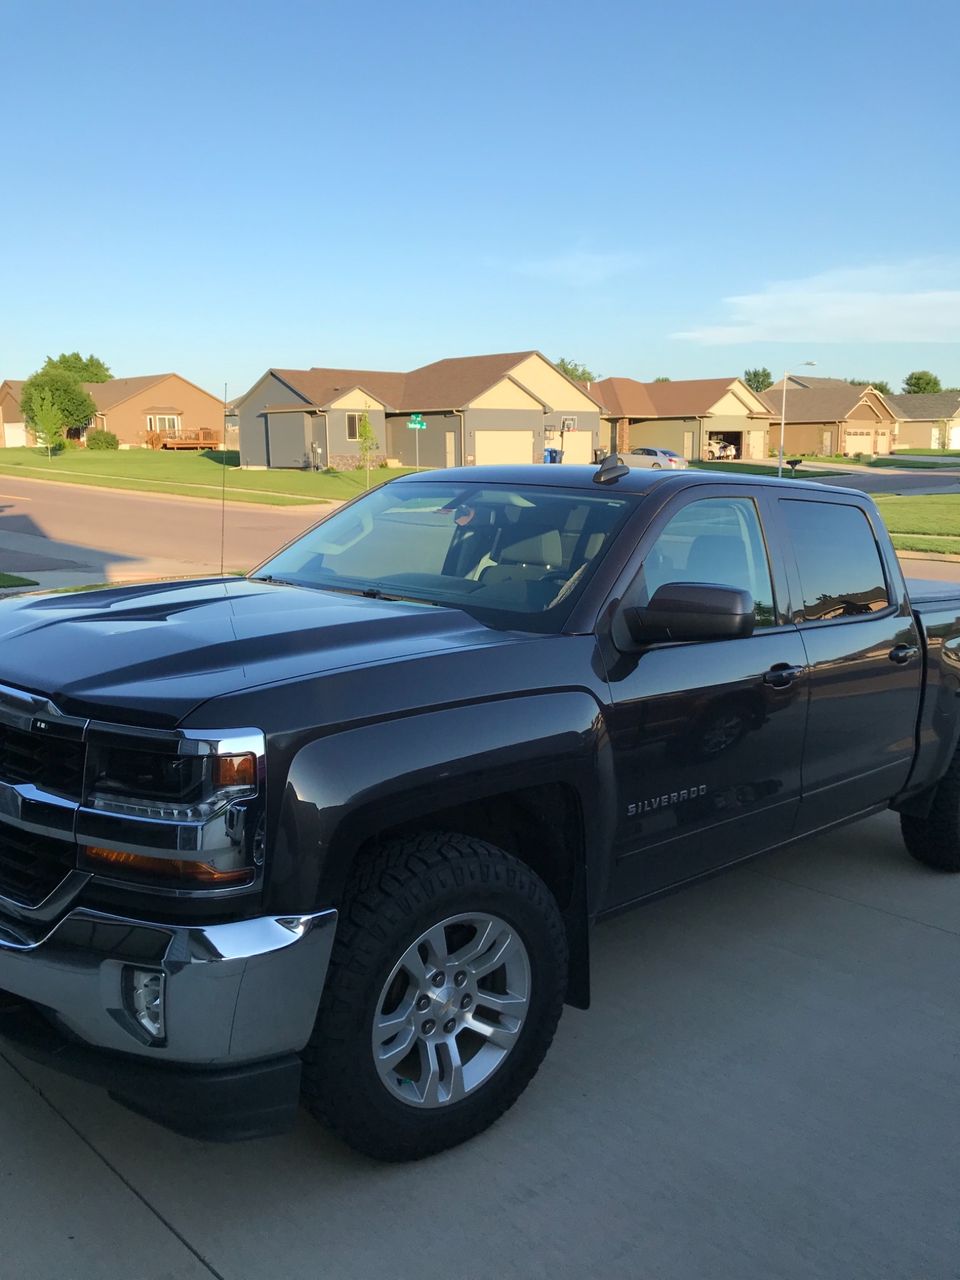 2016 Chevrolet Silverado 1500 | Sioux Falls, SD, Pewter (Gray)